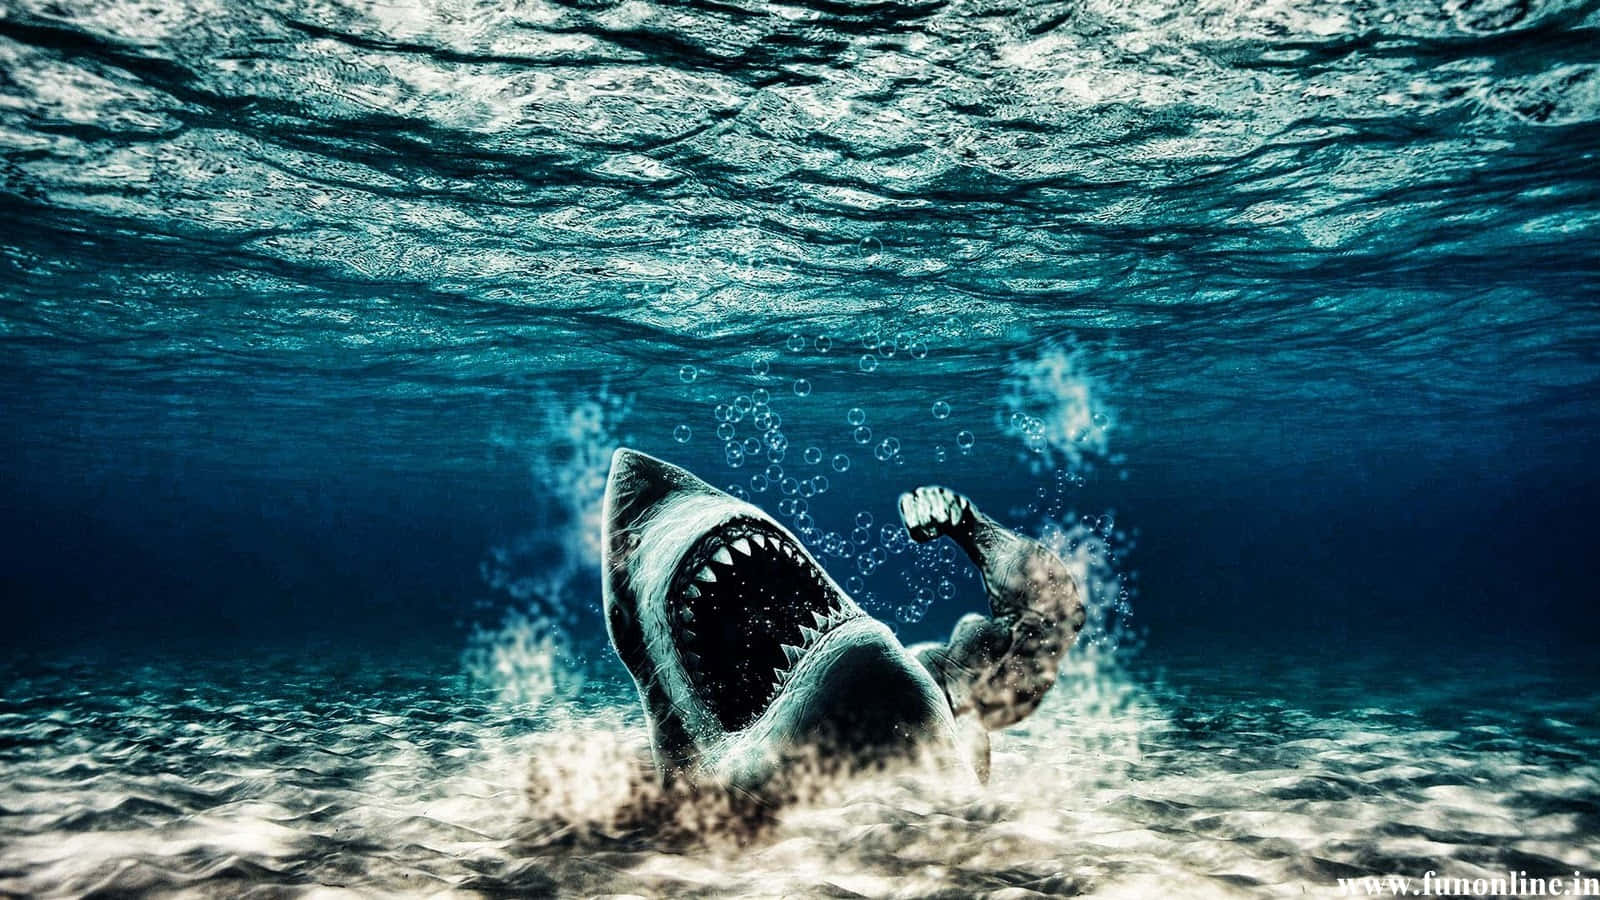 Einbedrohlicher Großer Weißer Hai Schwimmt Bedrohlich Durch Die Tiefen. Wallpaper